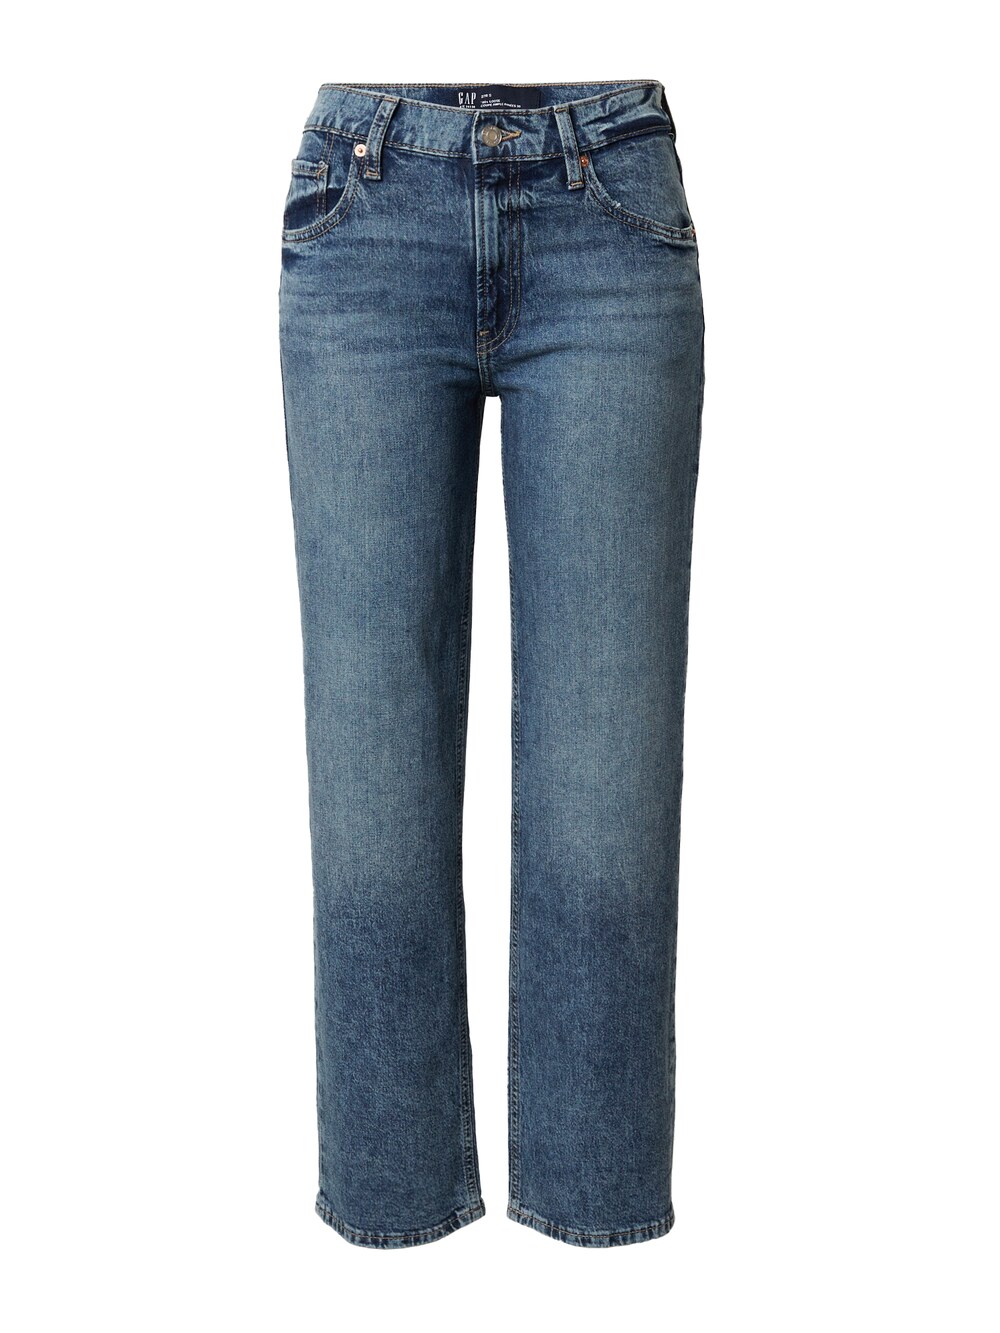 Обычные джинсы Gap CLERK, синий